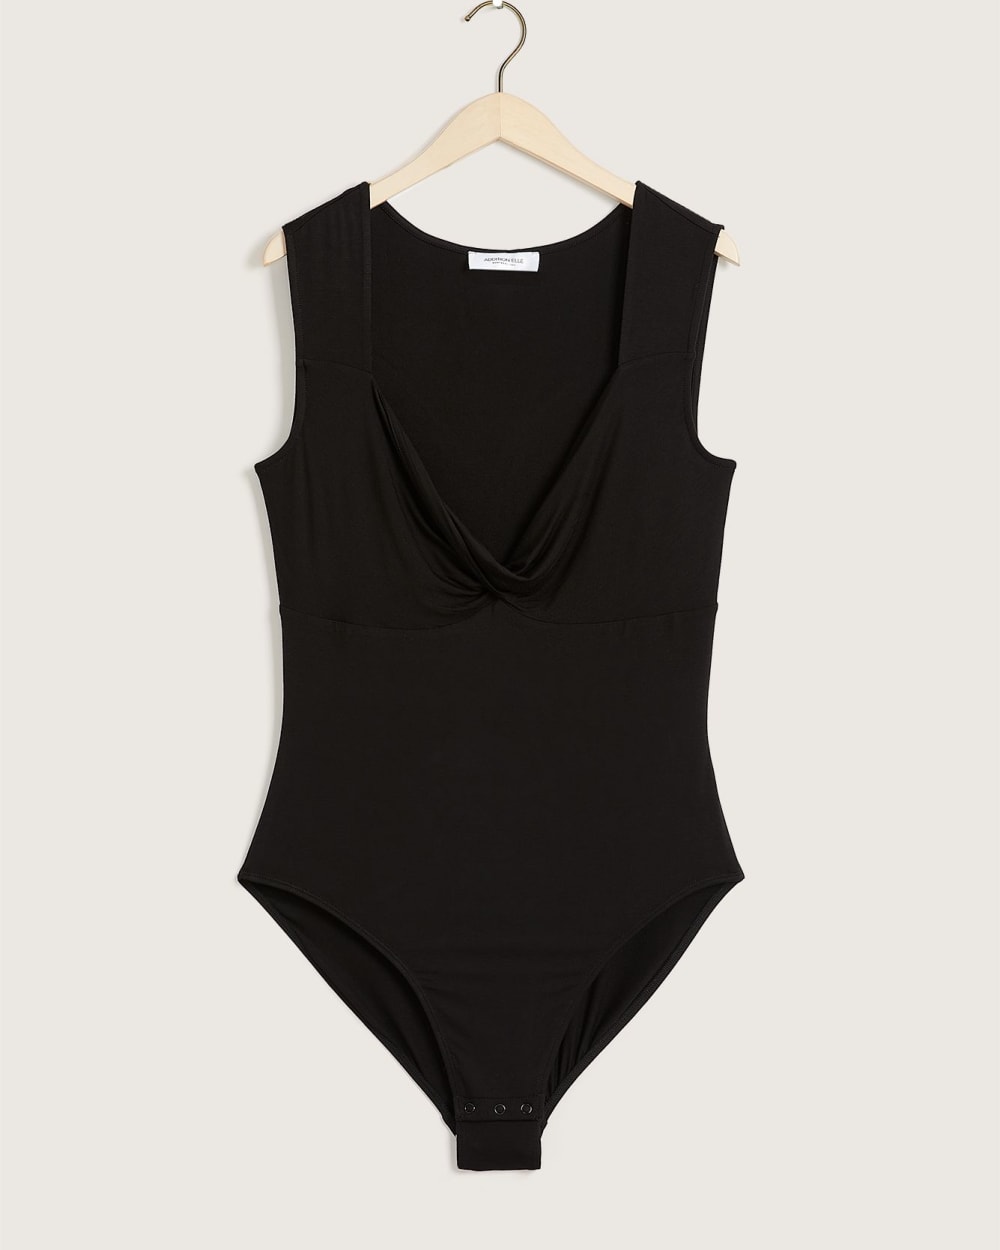 Black Sleeveless Thong Bodysuit - Addition Elle